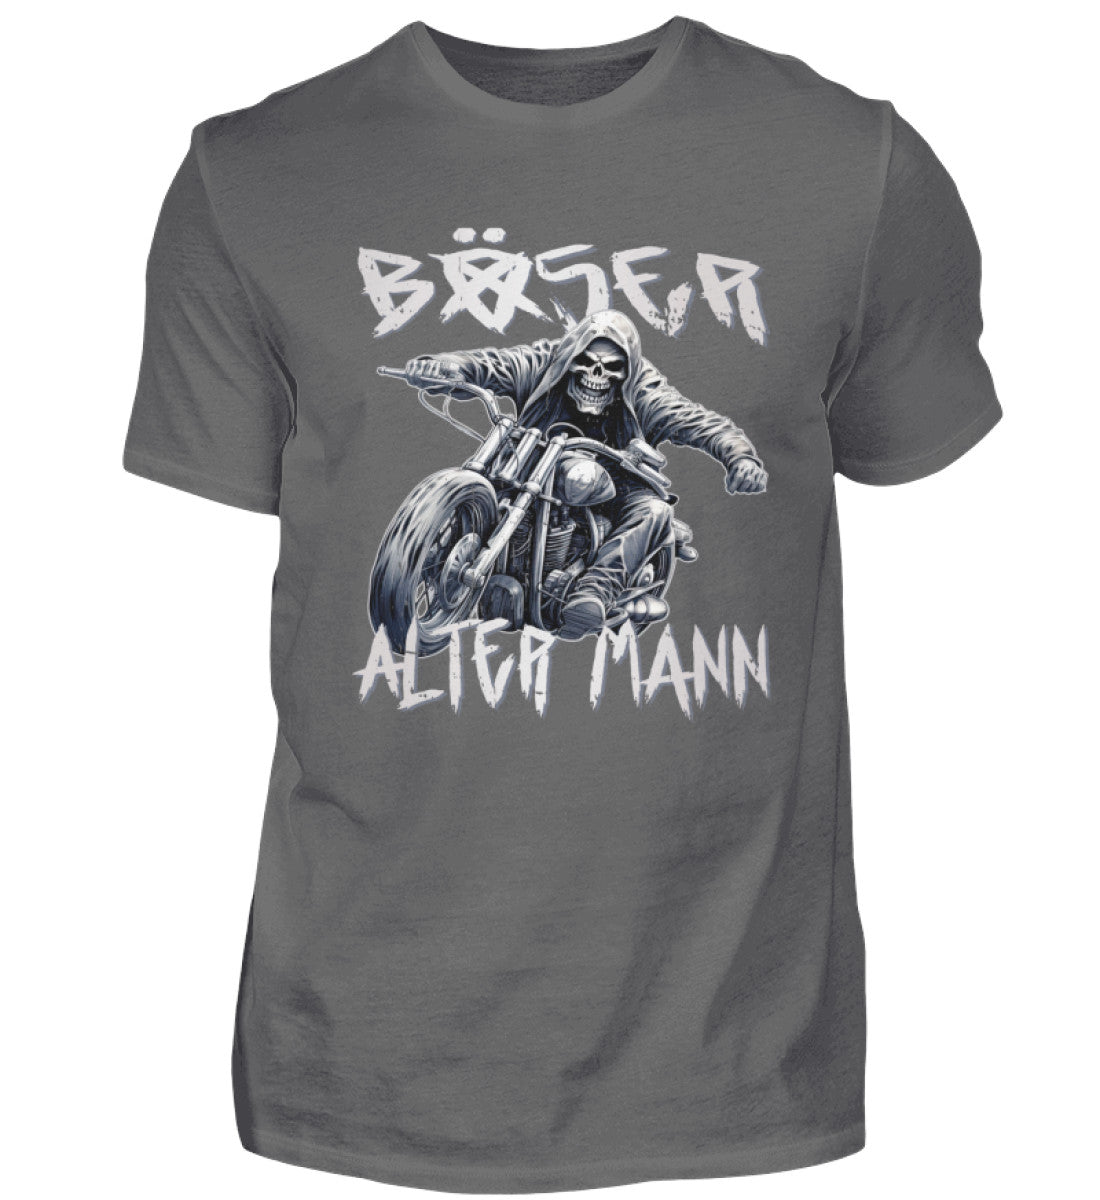 Biker T-Shirt "Böser alter Mann" für Motorradfahrer in dunkelgrau. 